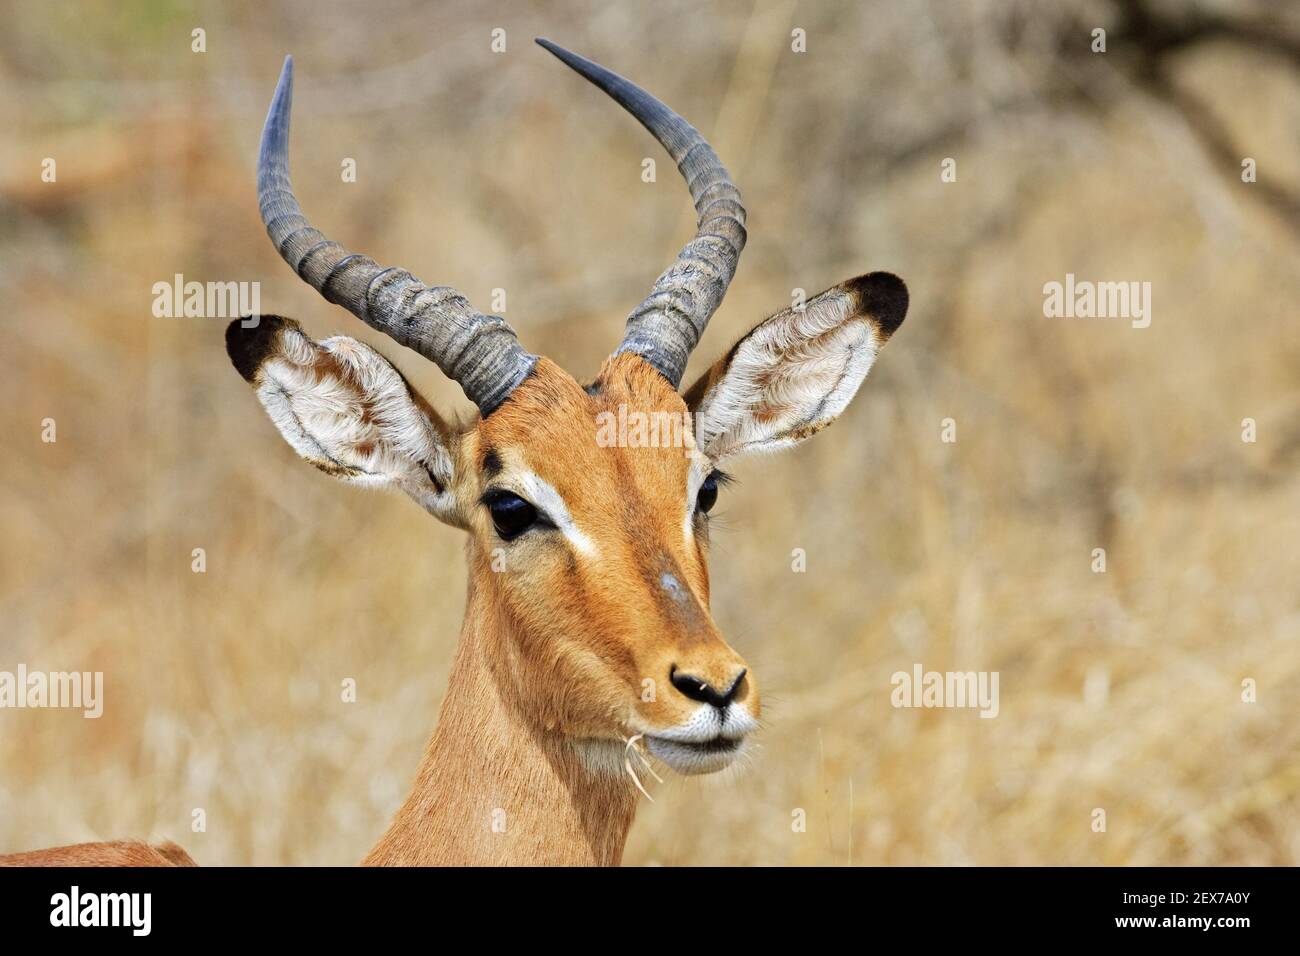 Impala, antilope à talon noir (Aepyceros melampus), Parc national Krueger, Parc national Kruger, Afrique du Sud, Afrique, Impala, S Banque D'Images